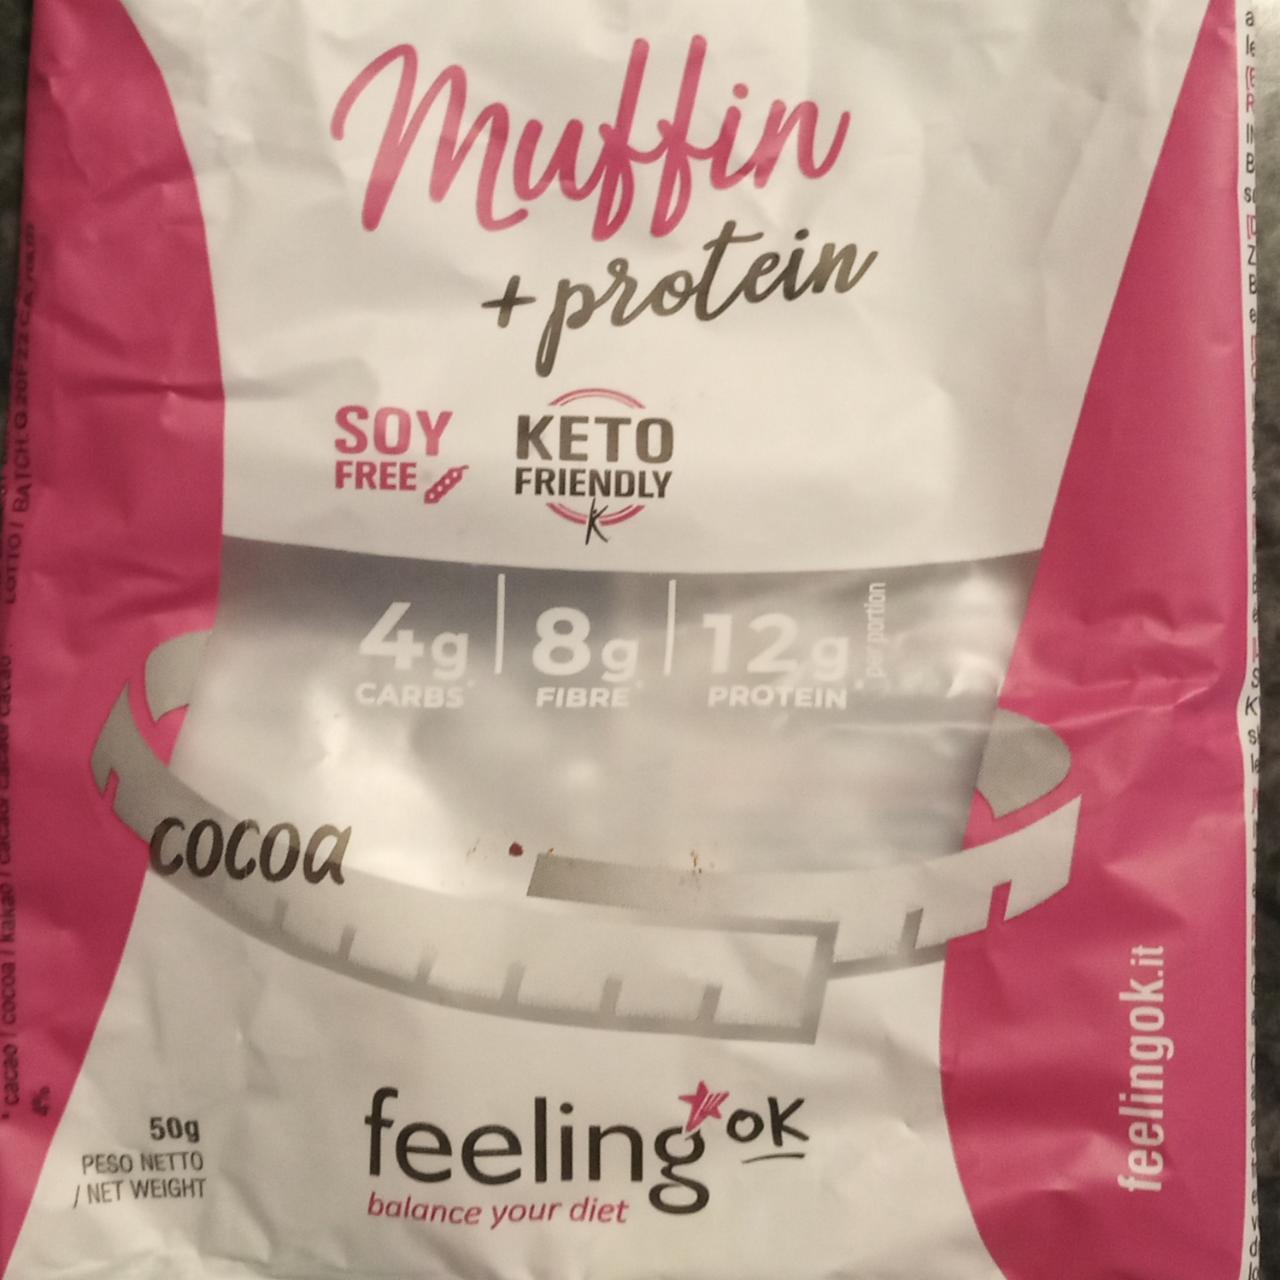 Fotografie - Muffin + protein Cocoa Feeling ok